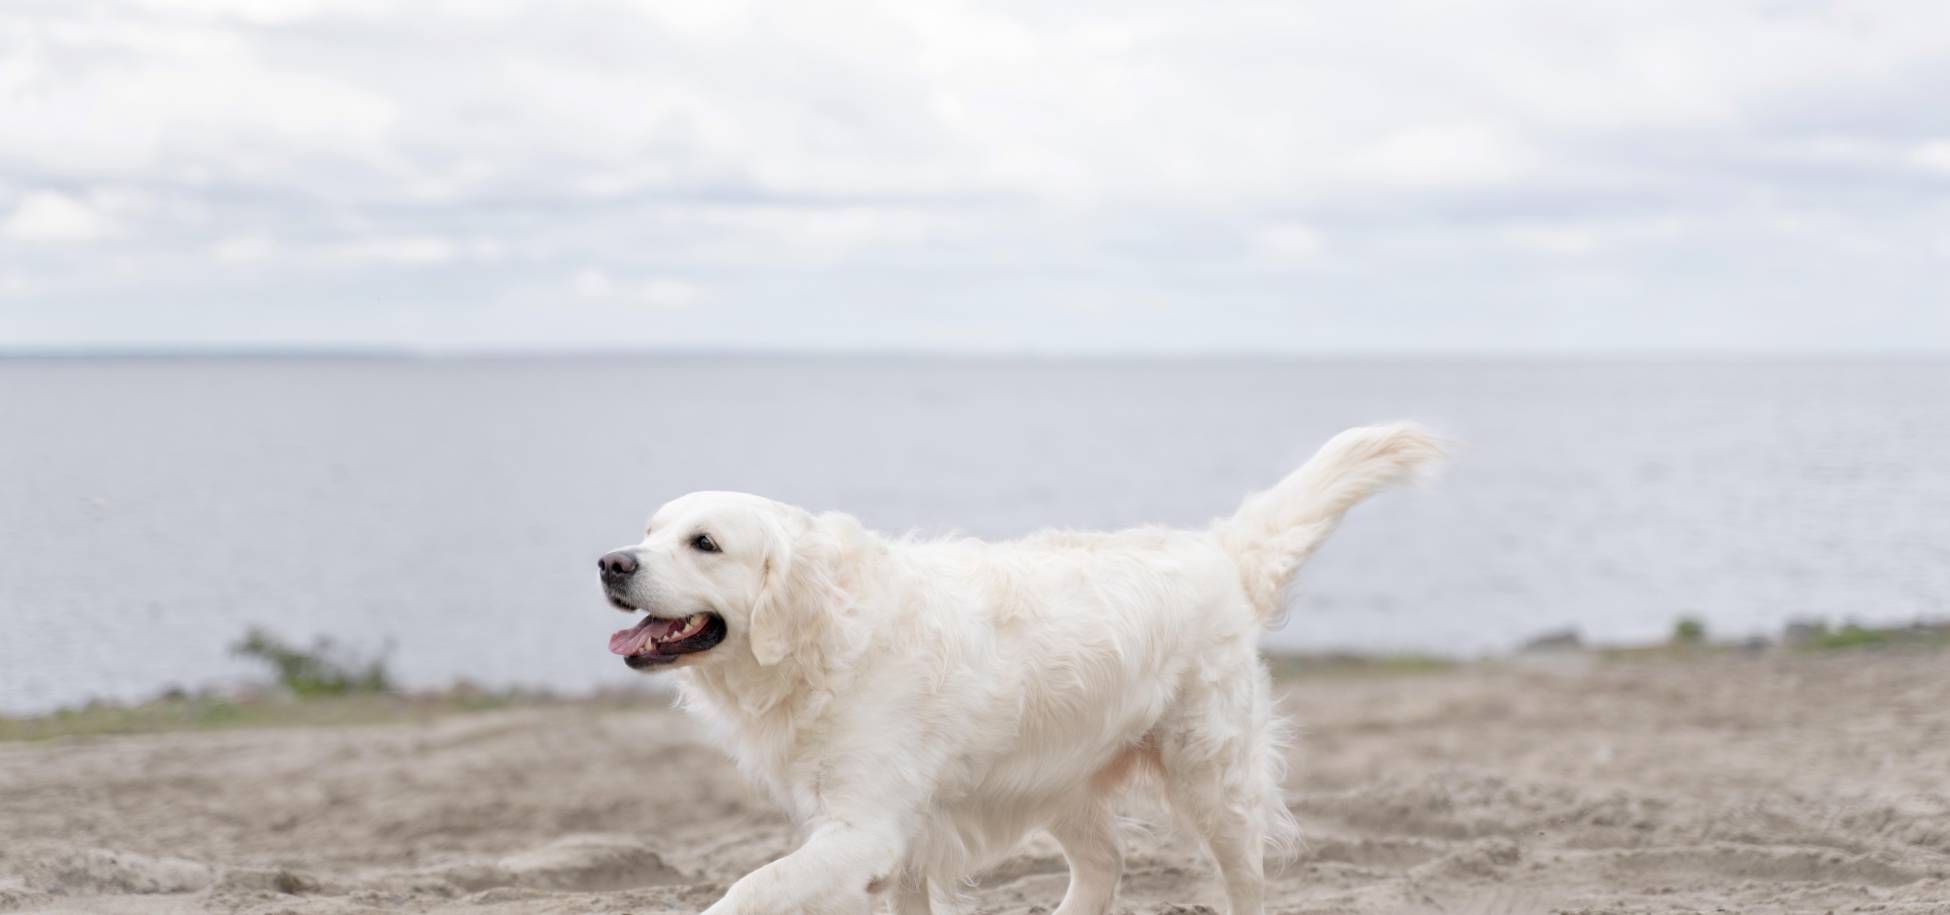 Επιτρέπονται τελικά οι σκύλοι στην παραλία; Τι ορίζει η νομοθεσία;